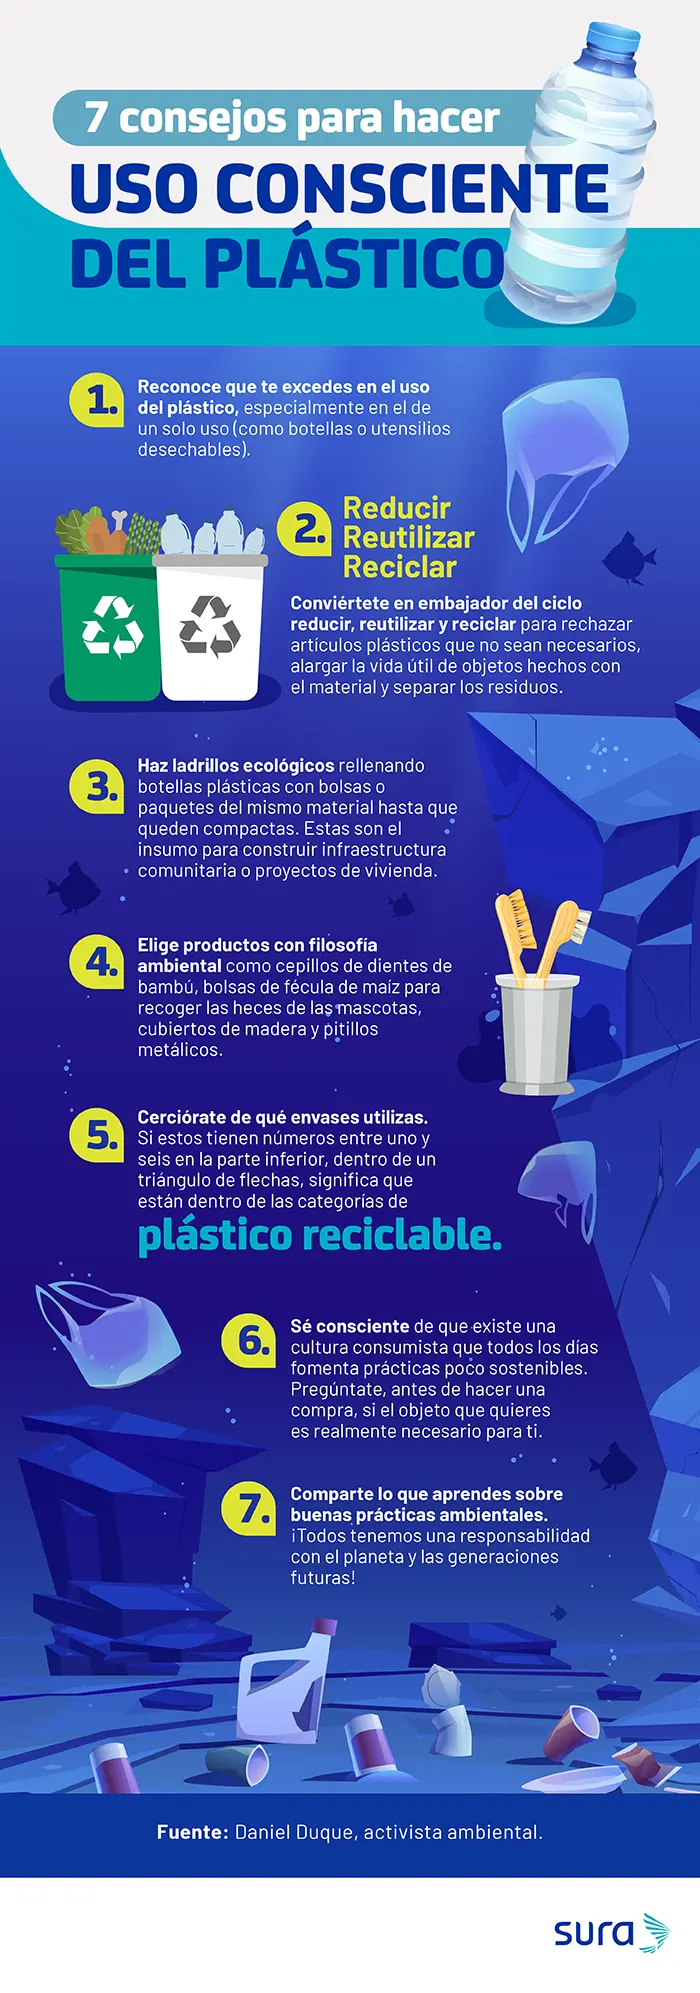 propuestas para reducir el plastico - Cuál es la estrategia de reducción de plástico